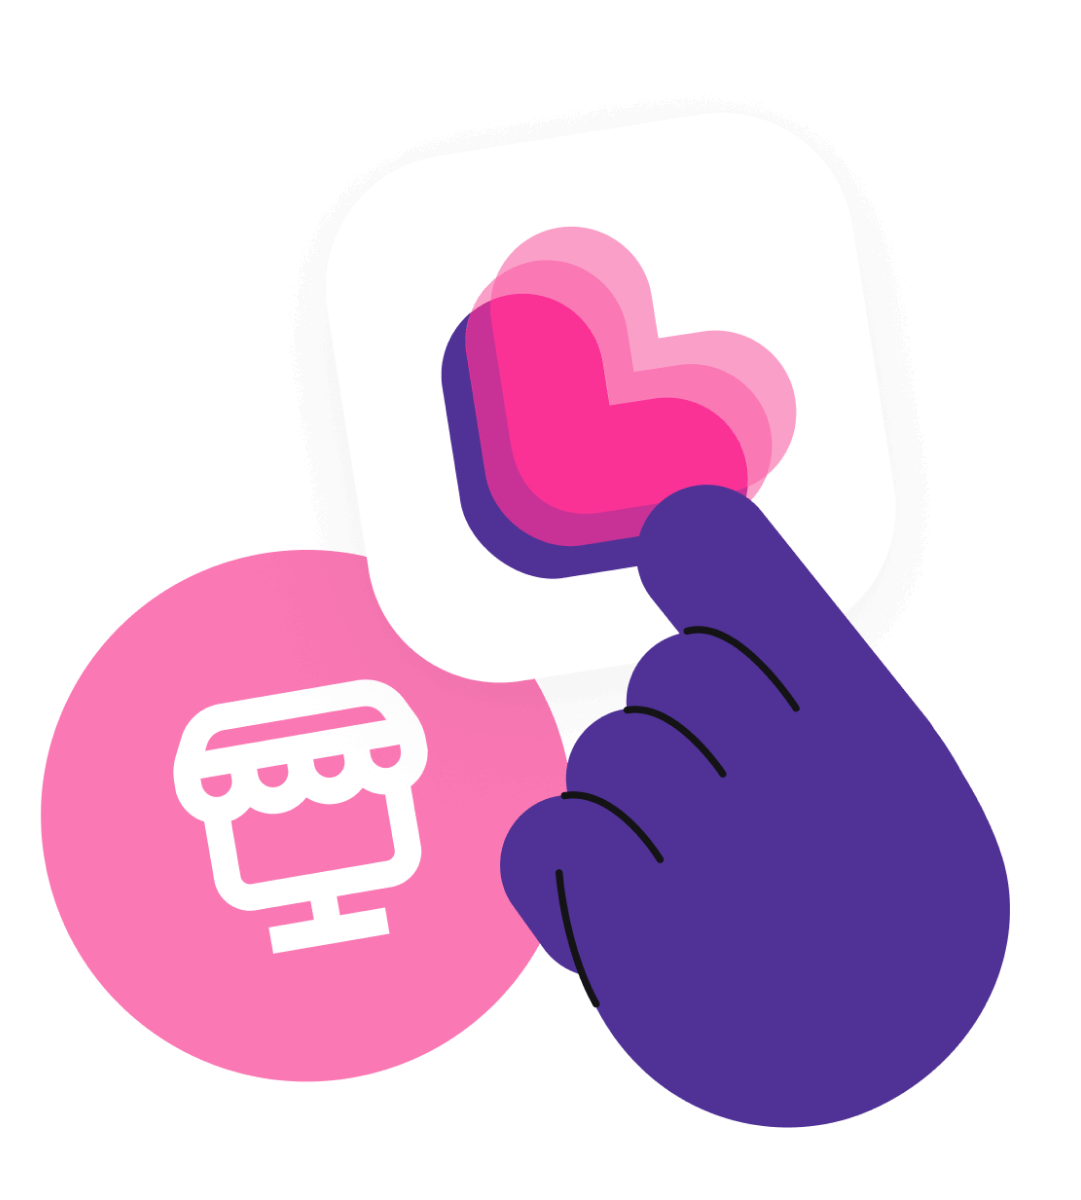 Ilustração de uma mão segurando um cartão, este que contém o logotipo da Yampi, que são três corações sobrepostos, numa escala de cor que vai do roxo ao rosa fraco. Ao fundo, há um círculo rosa com um desenho demonstrativo de uma loja virtual.